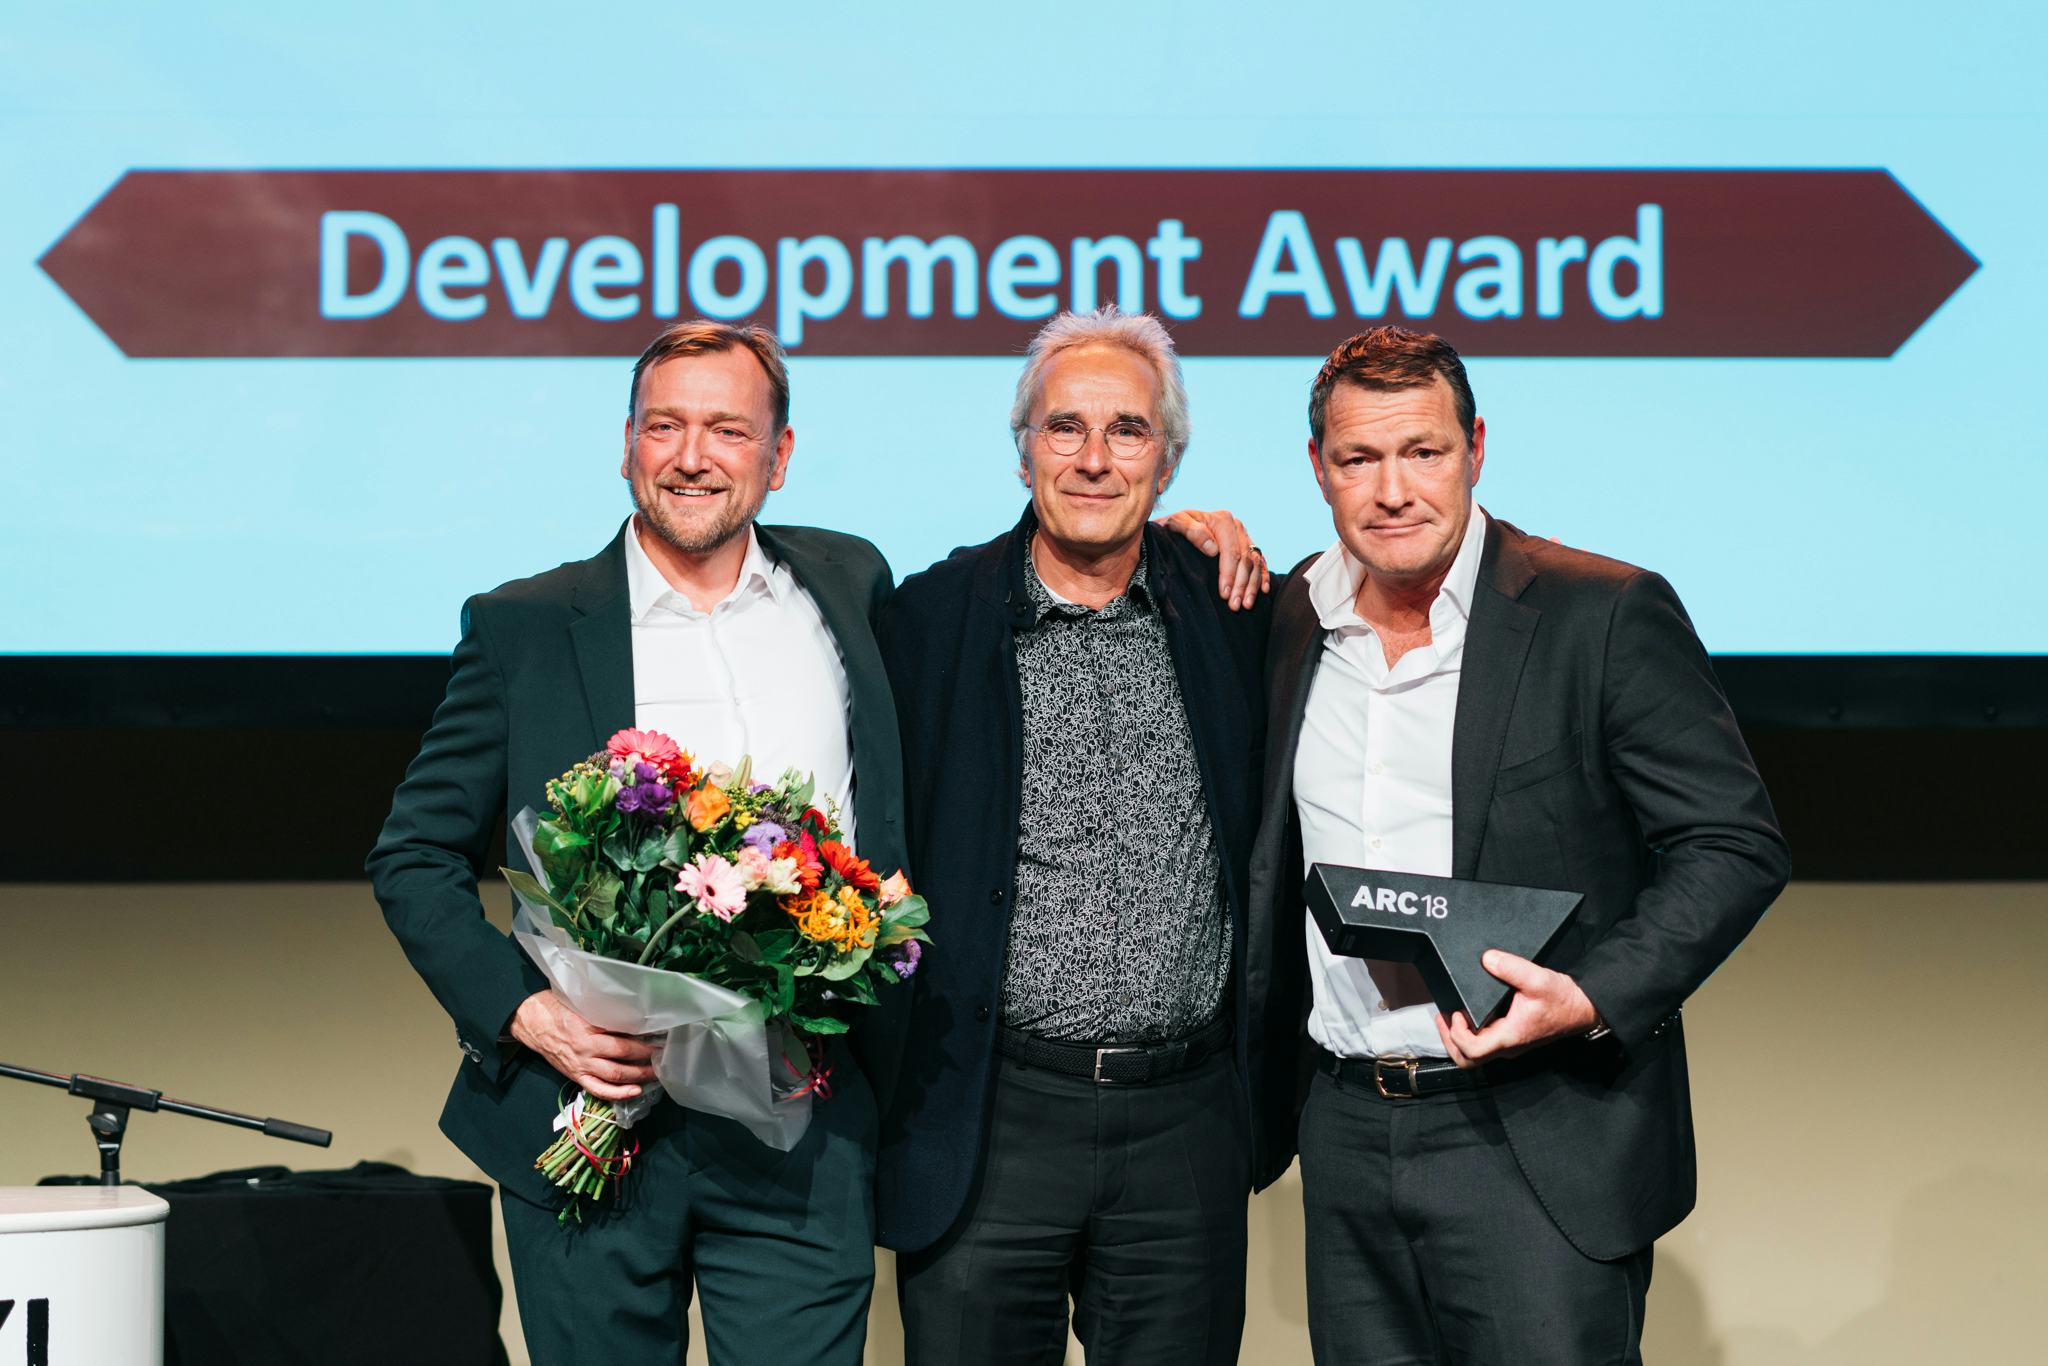 De winnaars en juryvoorzitter Jeroen van Schooten van de ARC18 Development Award. Beeld: Ⓒ KSK Photography || Kyra Sophia Kataigides